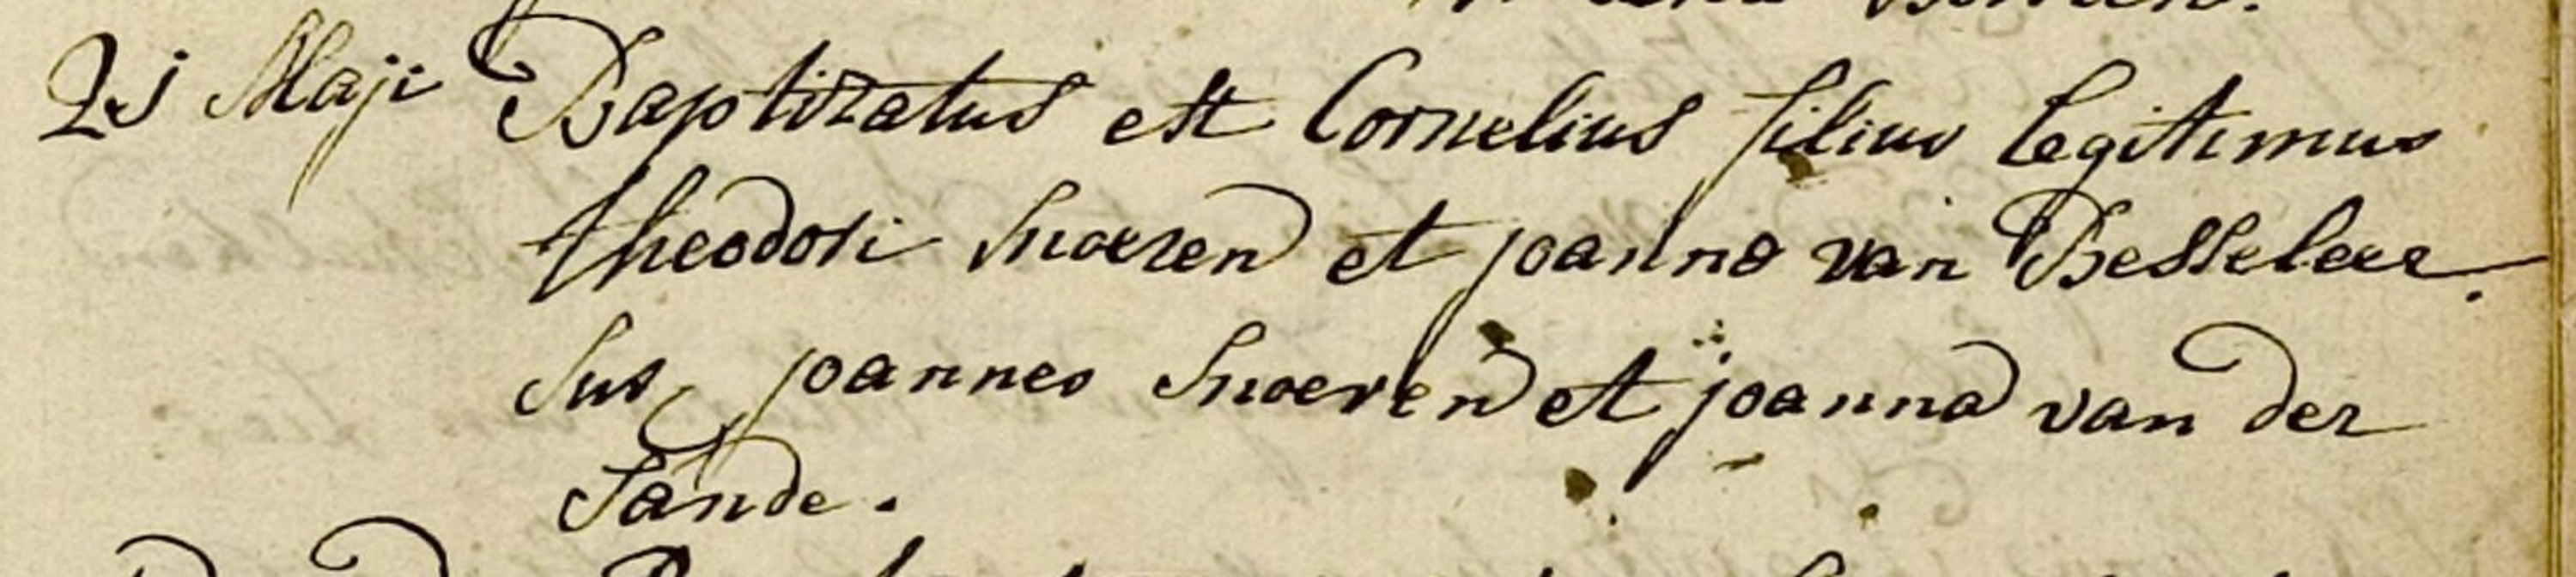 snoeren_cornelius__geboren_op_21_mei_1789_in_loon_op_zand.jpg